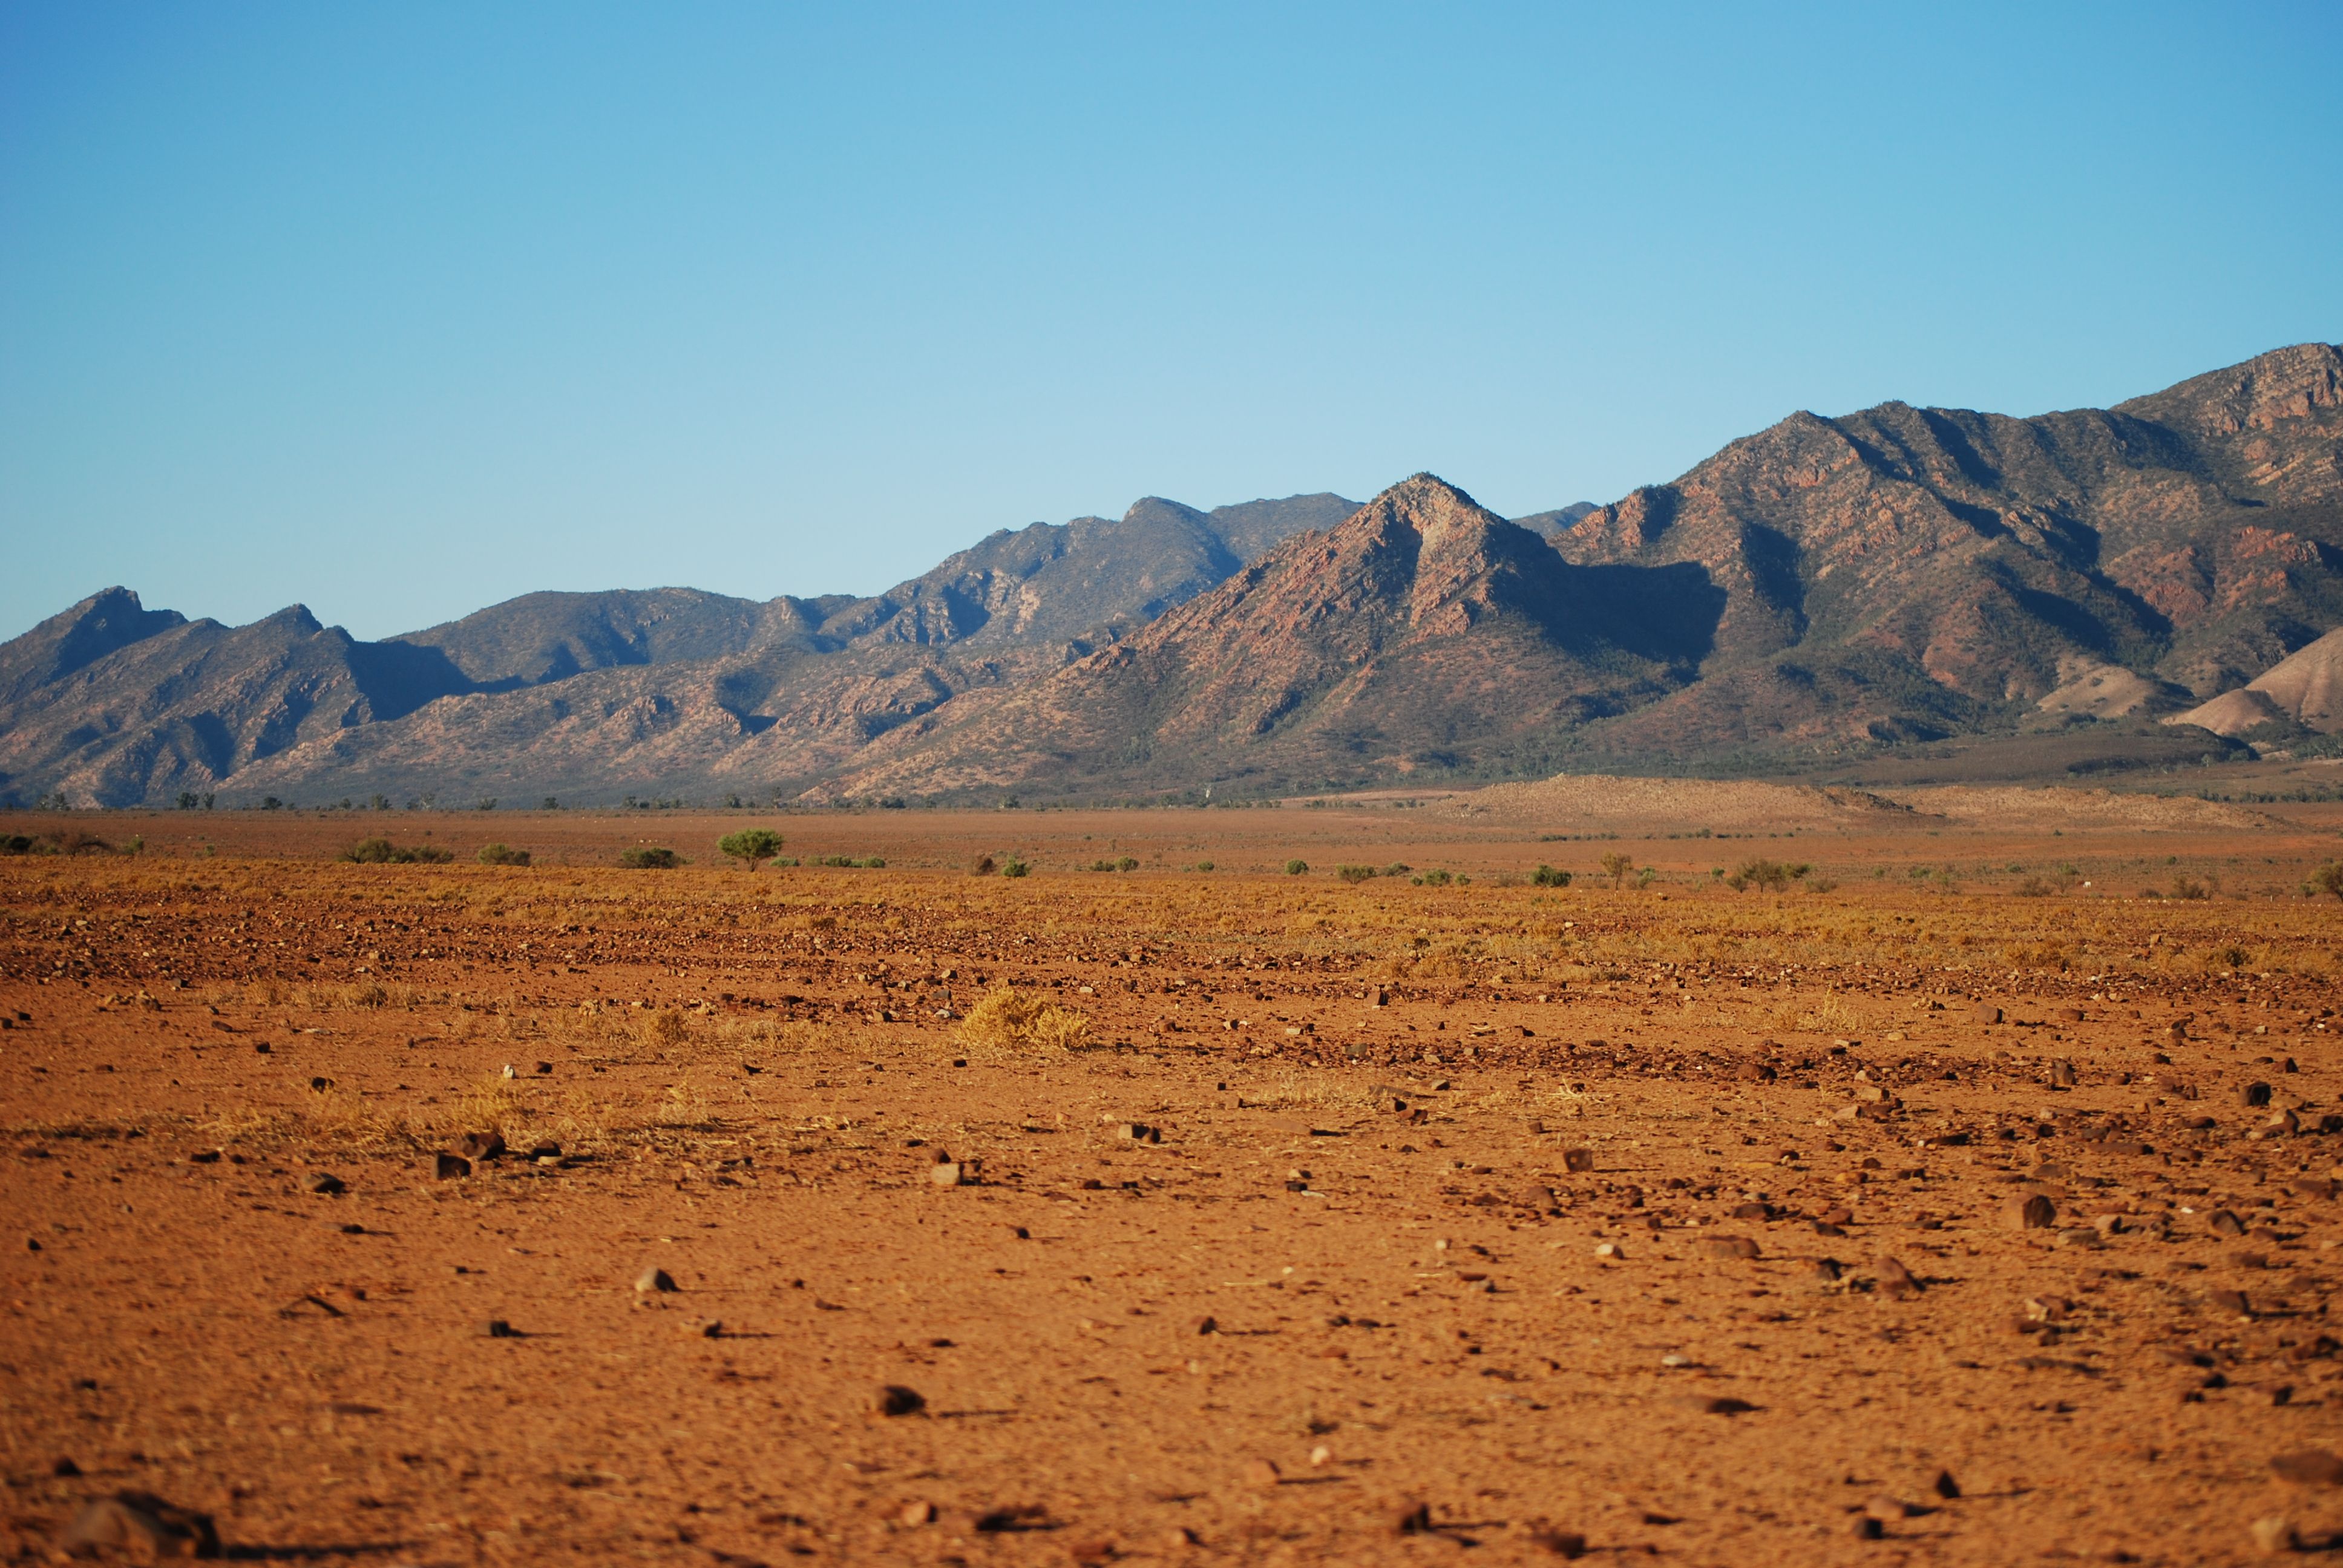 تصویر بیابان خشک و بی آب و علف برای تحقیق در رابطه با صحراها